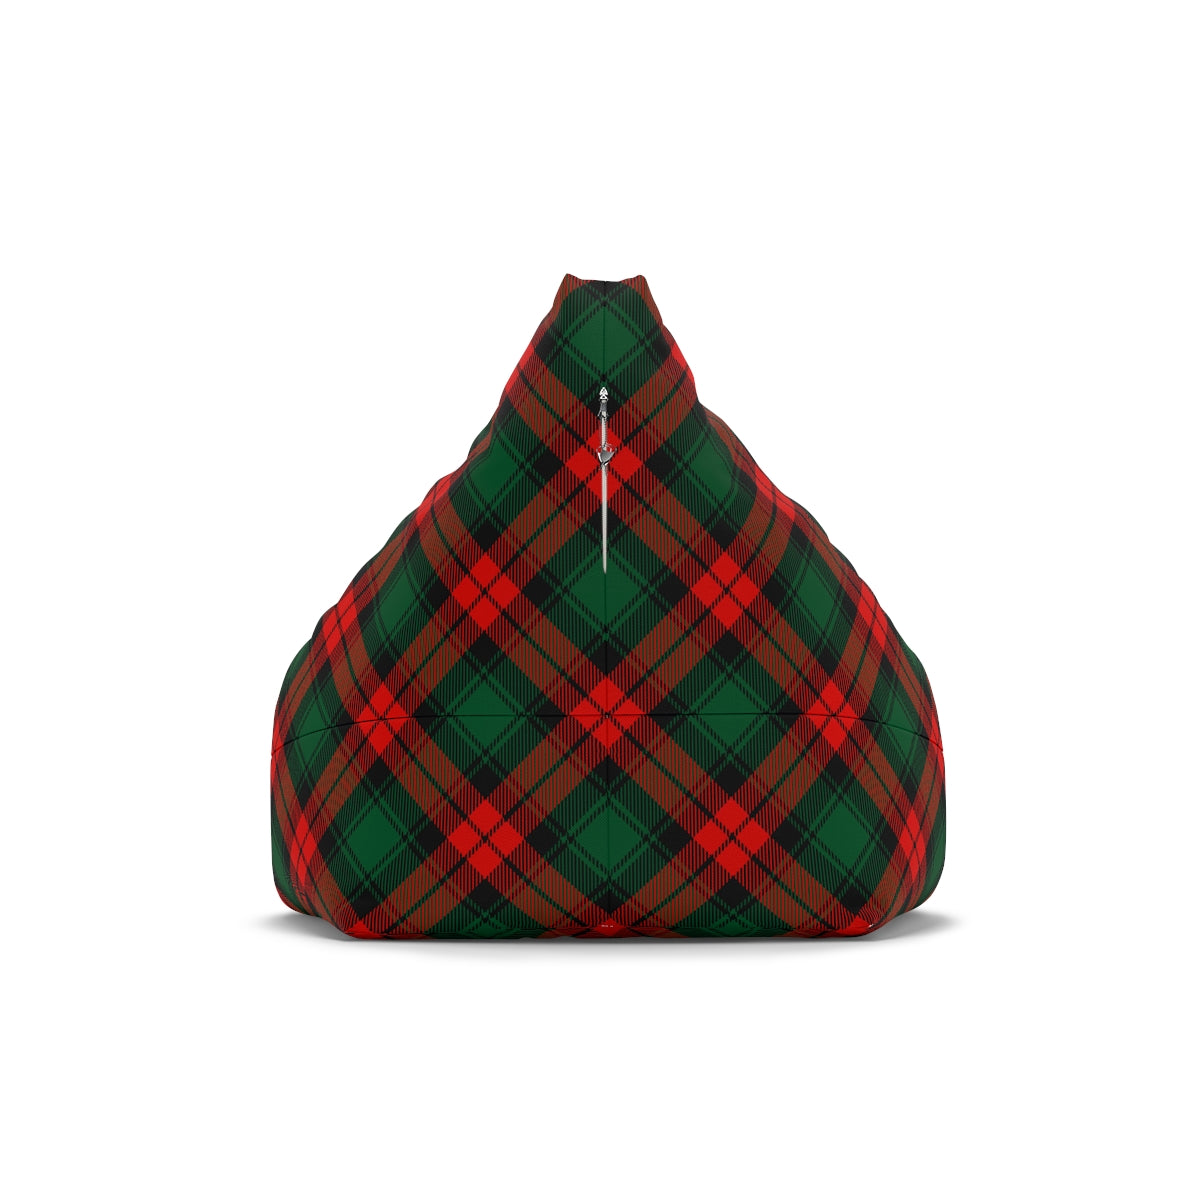 Red and Green Tartan Plaid Bean Bag Chair Cover